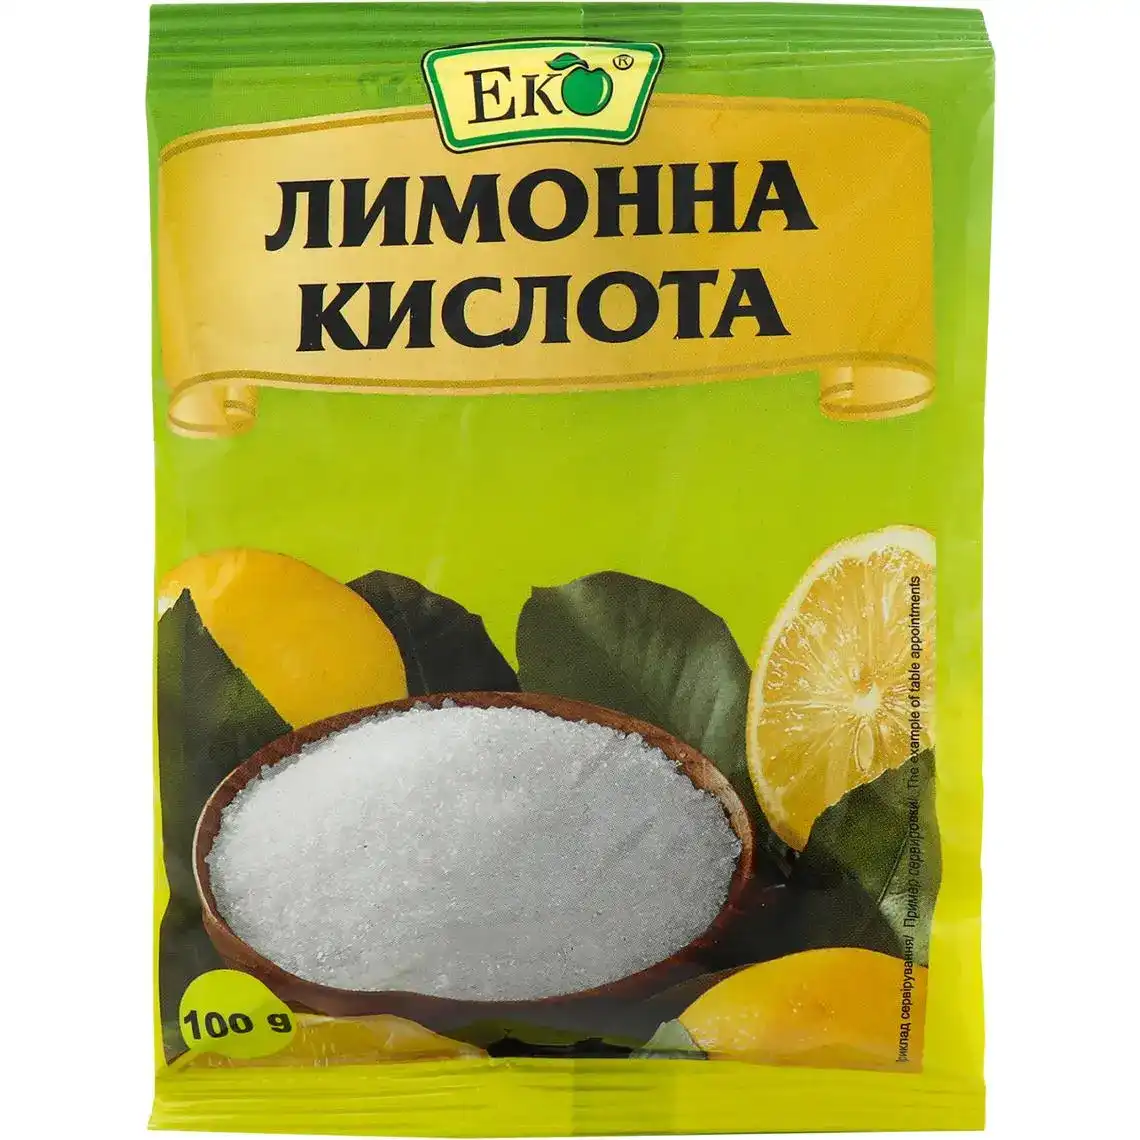 Кислота лимона Еко 100 г